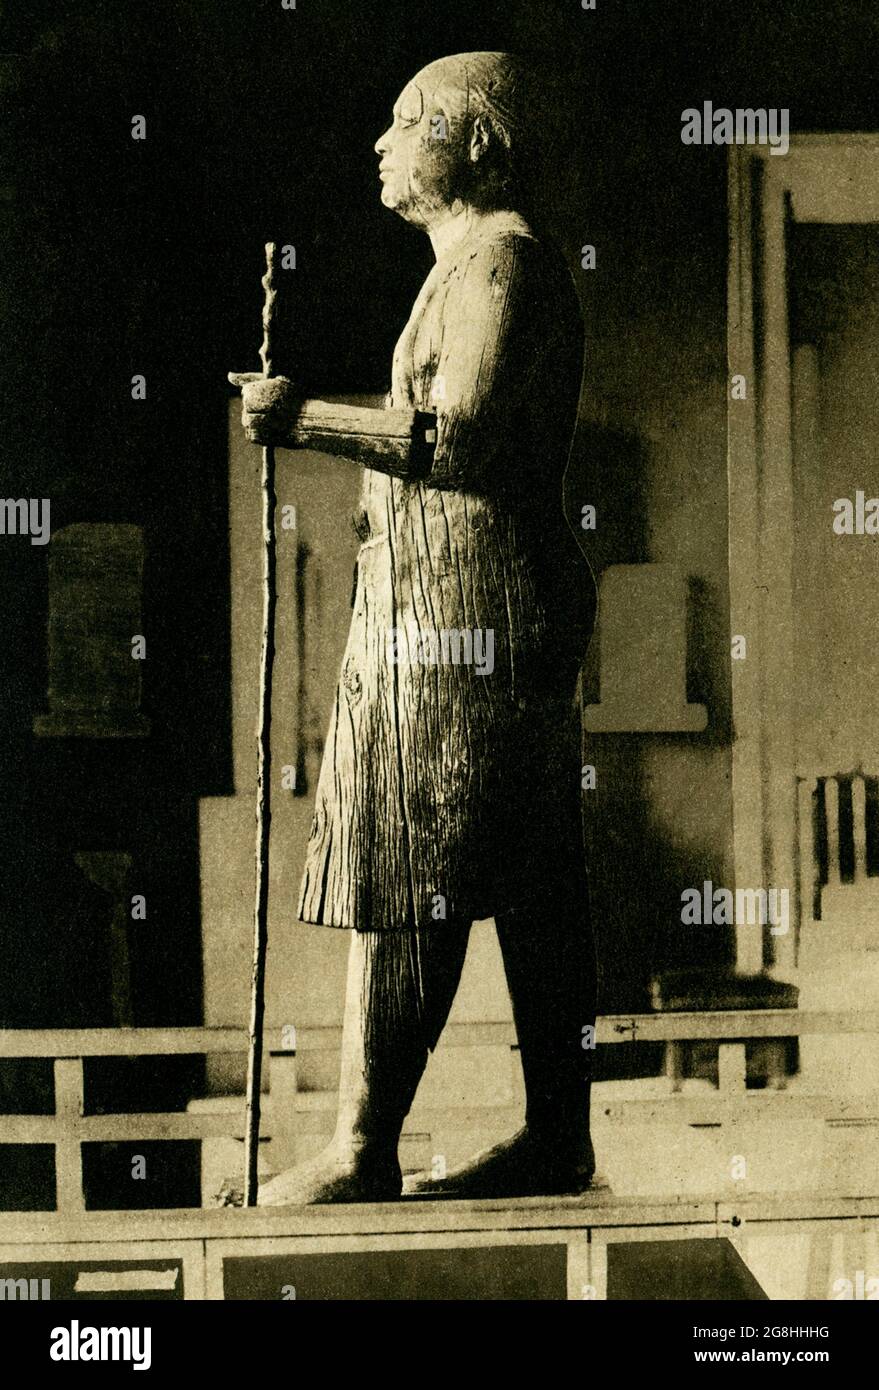 Sheikh Beled al Museo di Giza. La scultura raffigura il sacerdote Ka-Aper. Sheikh el-Beled significa capo villaggio. La scultura porta questo nome come i lavoratori che hanno scavato fuori pensiero che avevano trovato il loro capo villaggio recentemente deceduto. Kaaper o Ka'aper, conosciuto anche come Sheikh el-Beled, fu un antico scriba e prete egiziano che visse tra la fine della IV dinastia e la prima della 5a dinastia (circa 2500 a.C.). Nonostante il suo grado non fosse tra i più alti, è ben noto per la sua famosa statua in legno. La sua mastaba fu scoperta da Auguste Mariette nella necropoli di Saqqara, Just nort Foto Stock